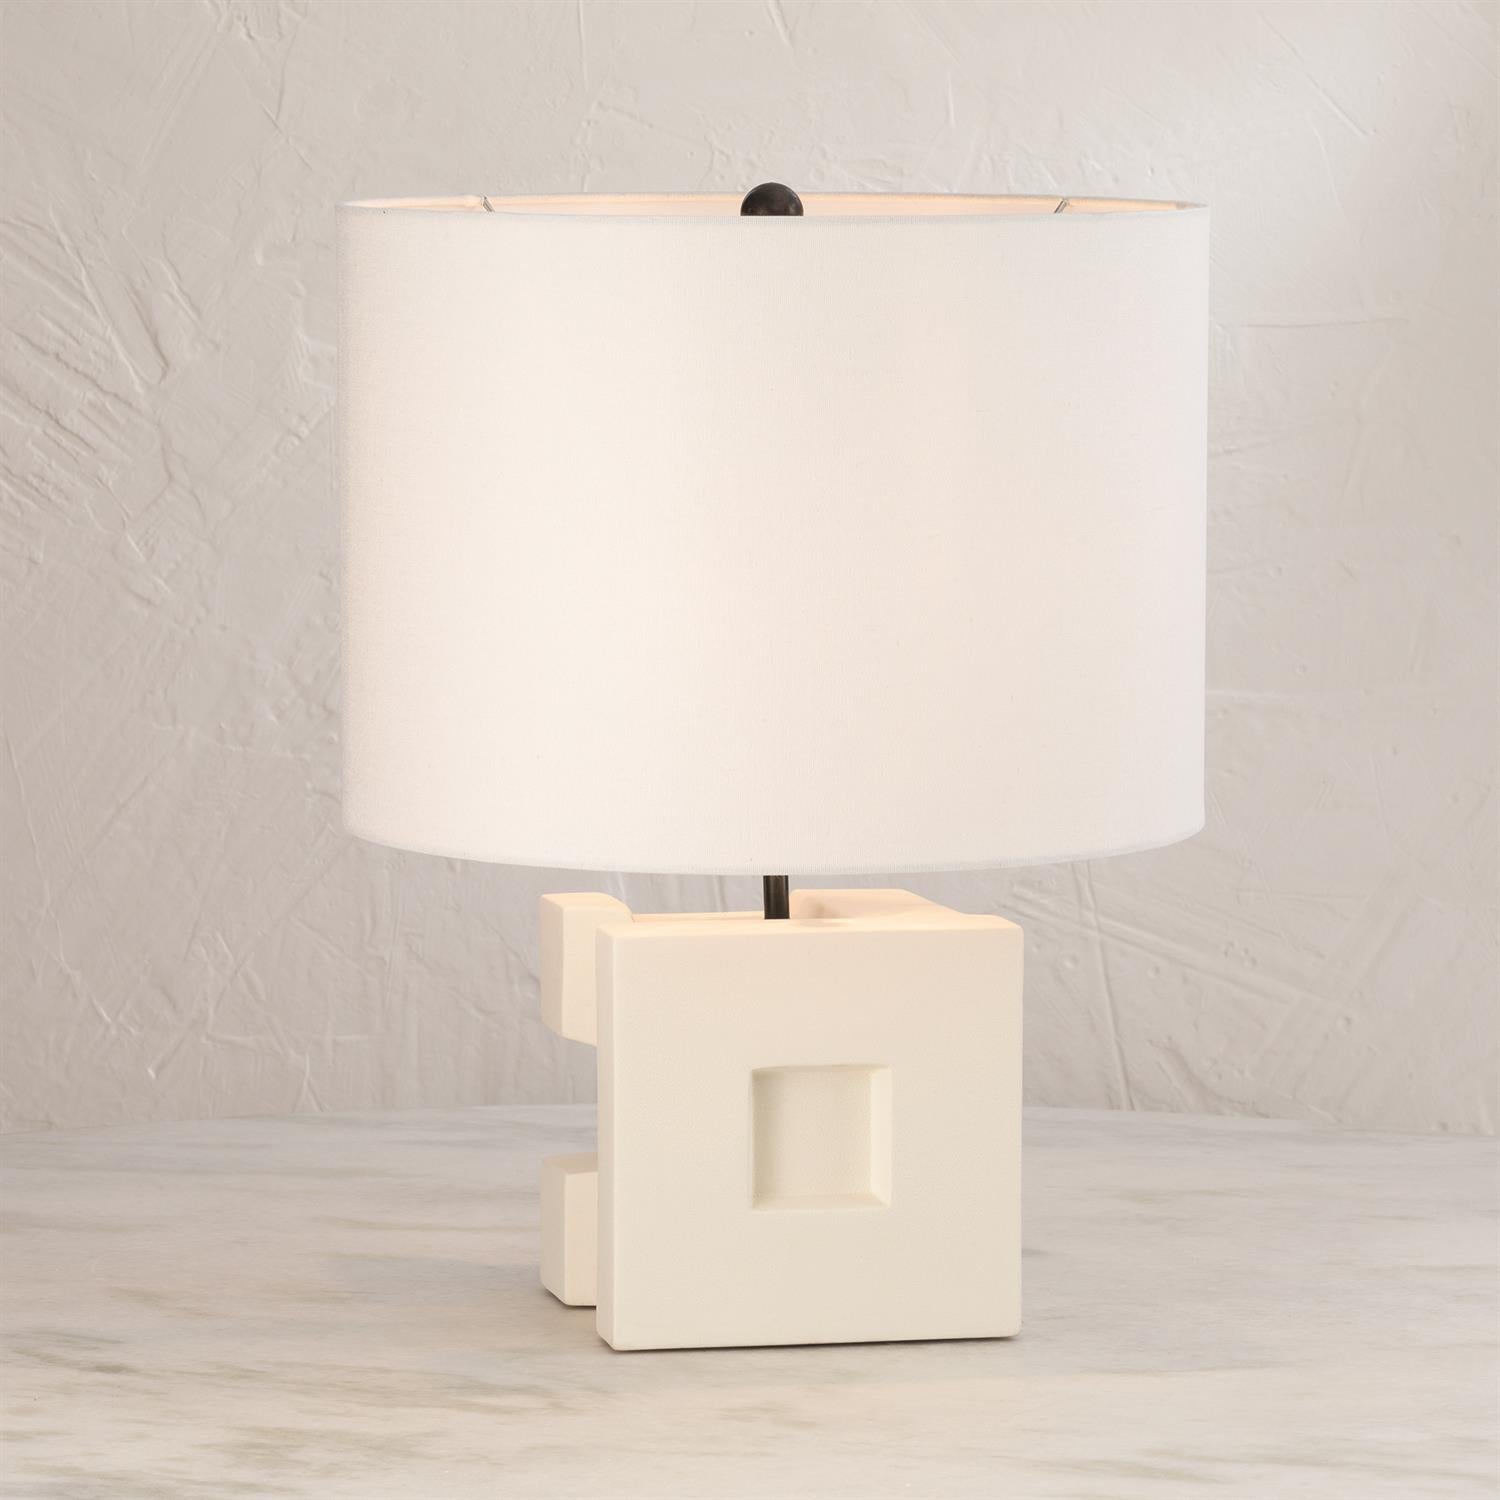 Cubist Ceramic Lamp - Grats Decor Interior Design & Build Inc.